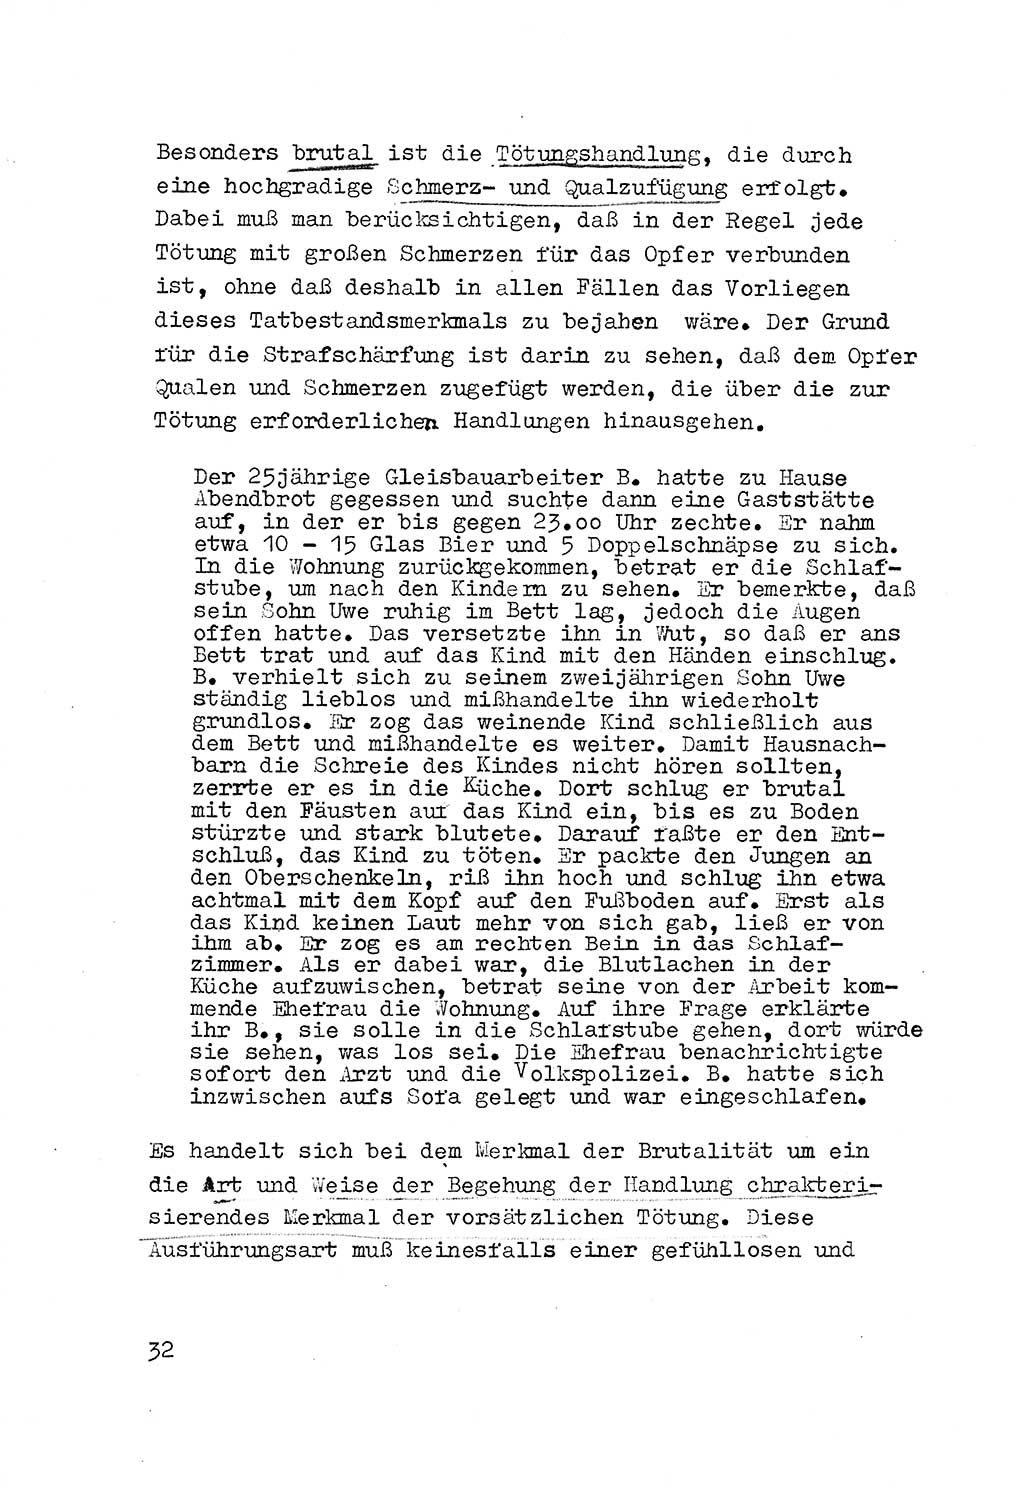 Strafrecht der DDR (Deutsche Demokratische Republik), Besonderer Teil, Lehrmaterial, Heft 3 1969, Seite 32 (Strafr. DDR BT Lehrmat. H. 3 1969, S. 32)